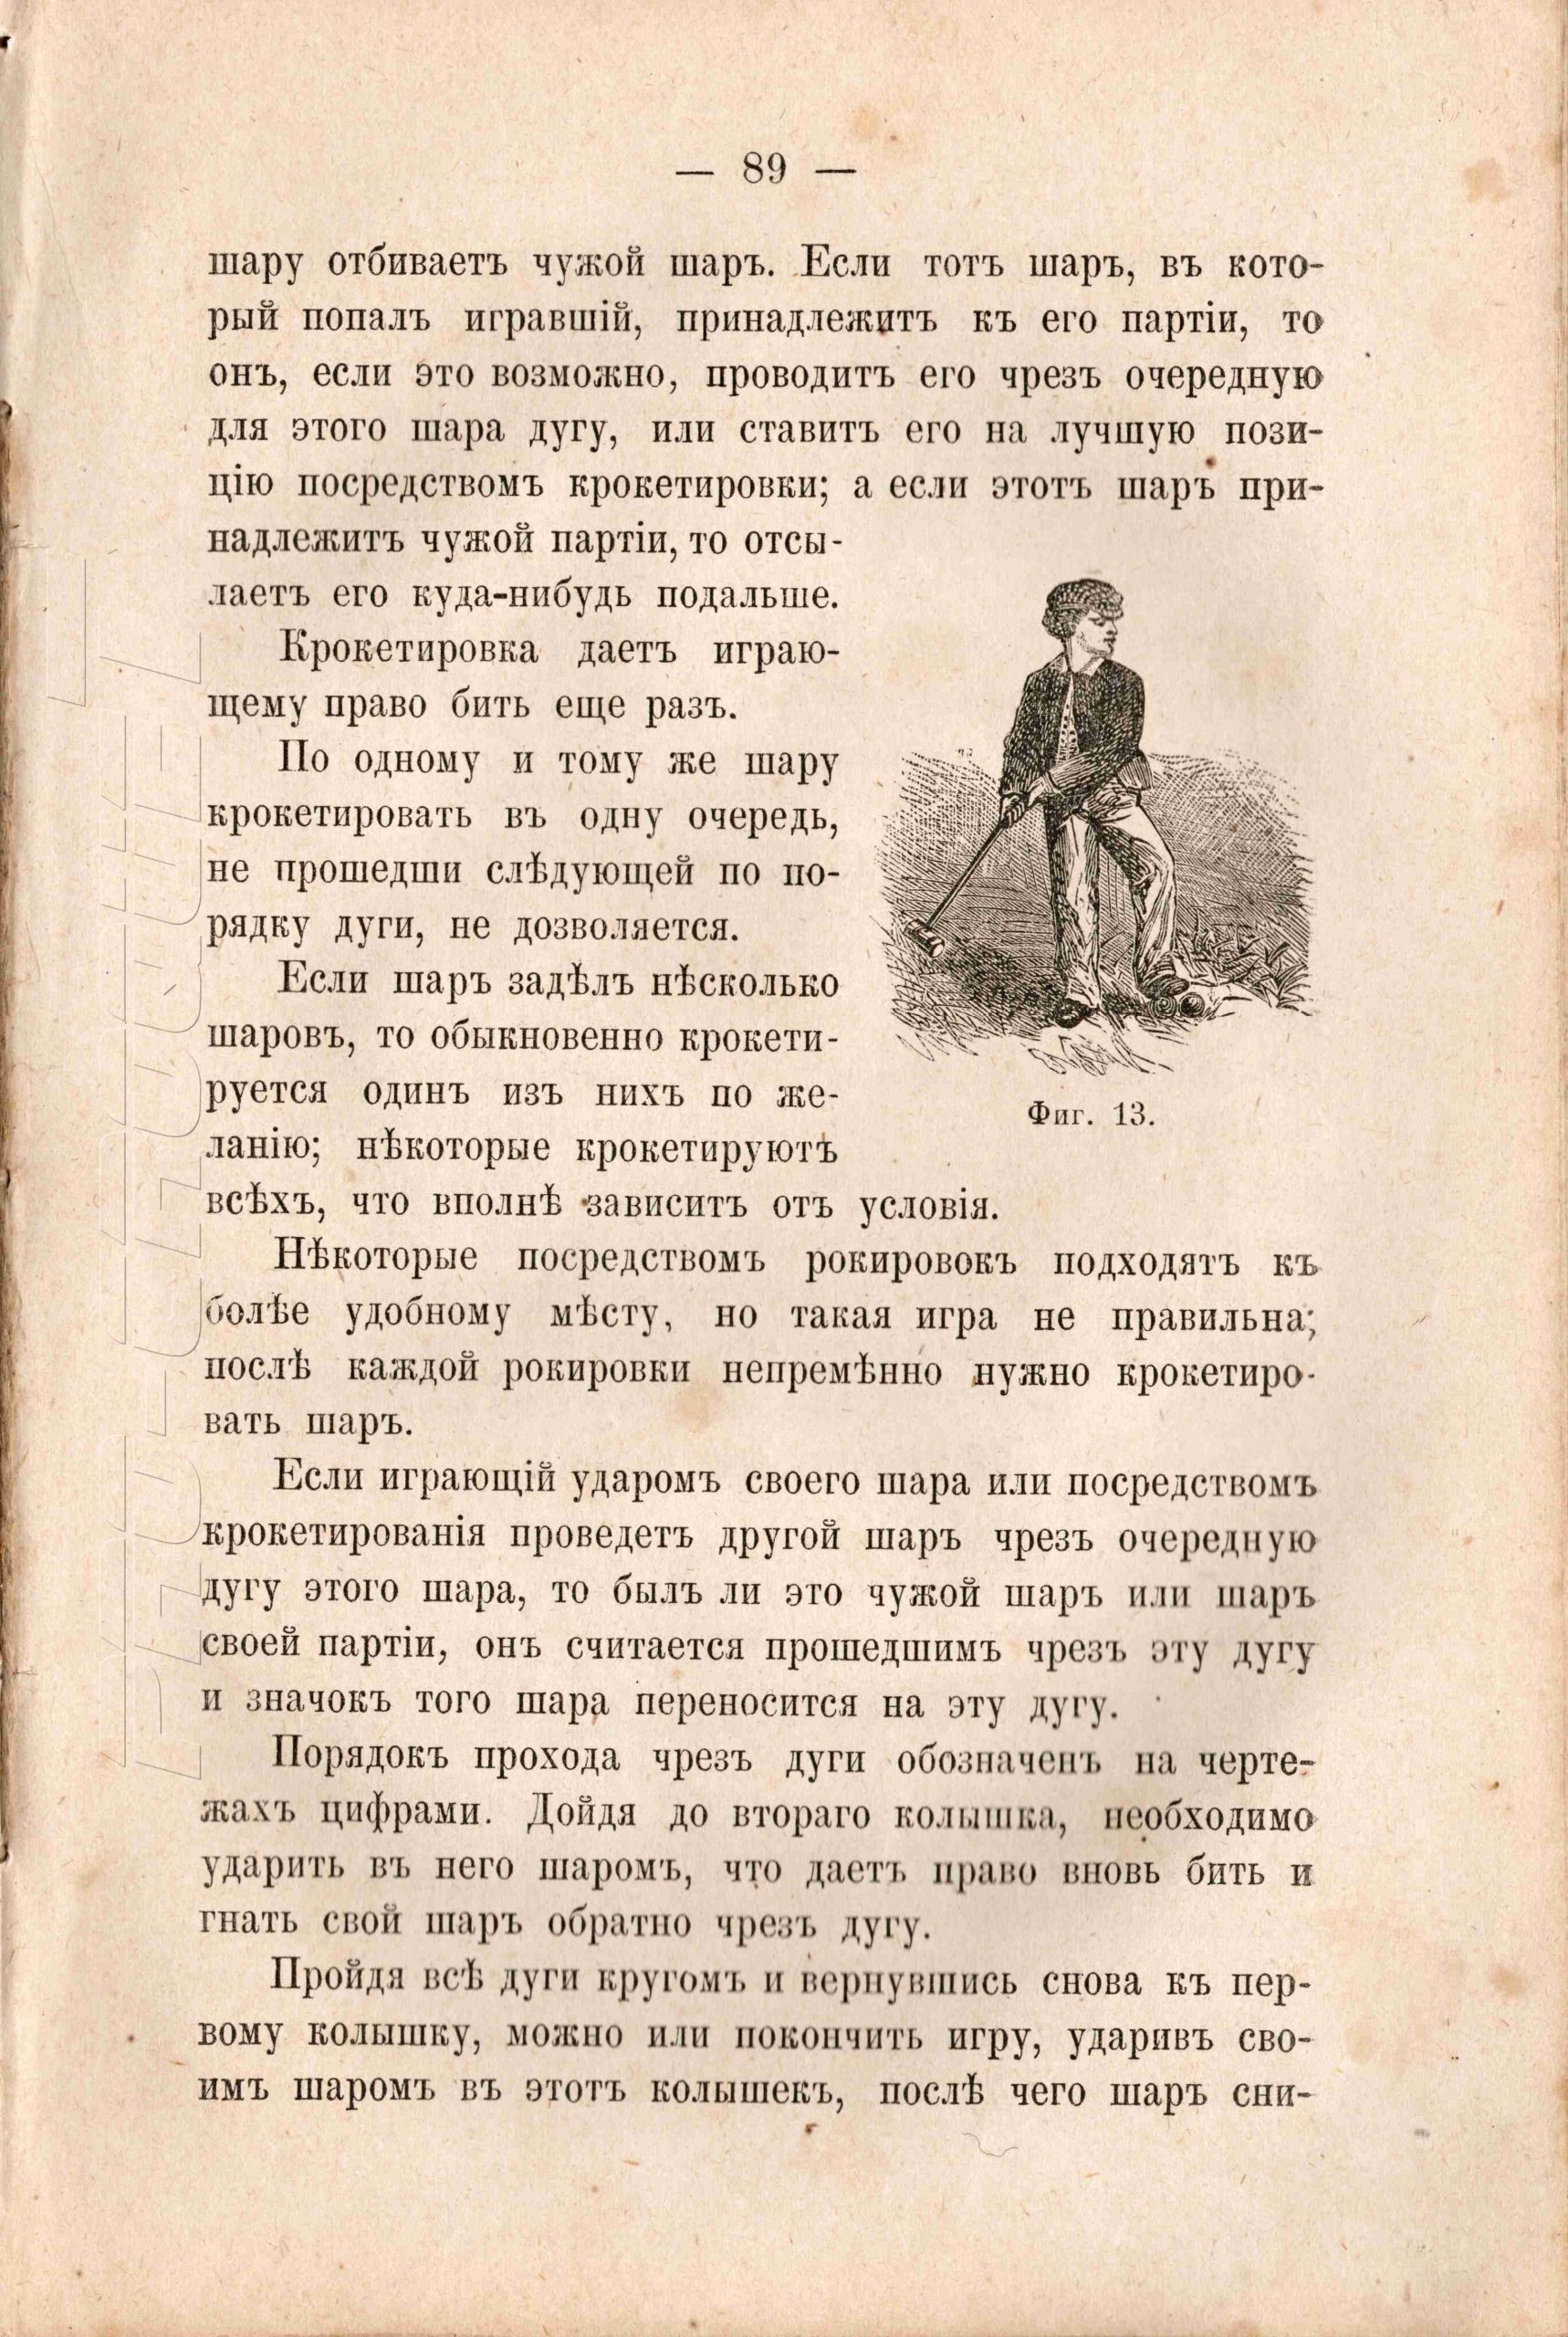 Из сборника игр и полезных занятий для детей всех возрастов за 1912 год | Петербургский крокет-клуб